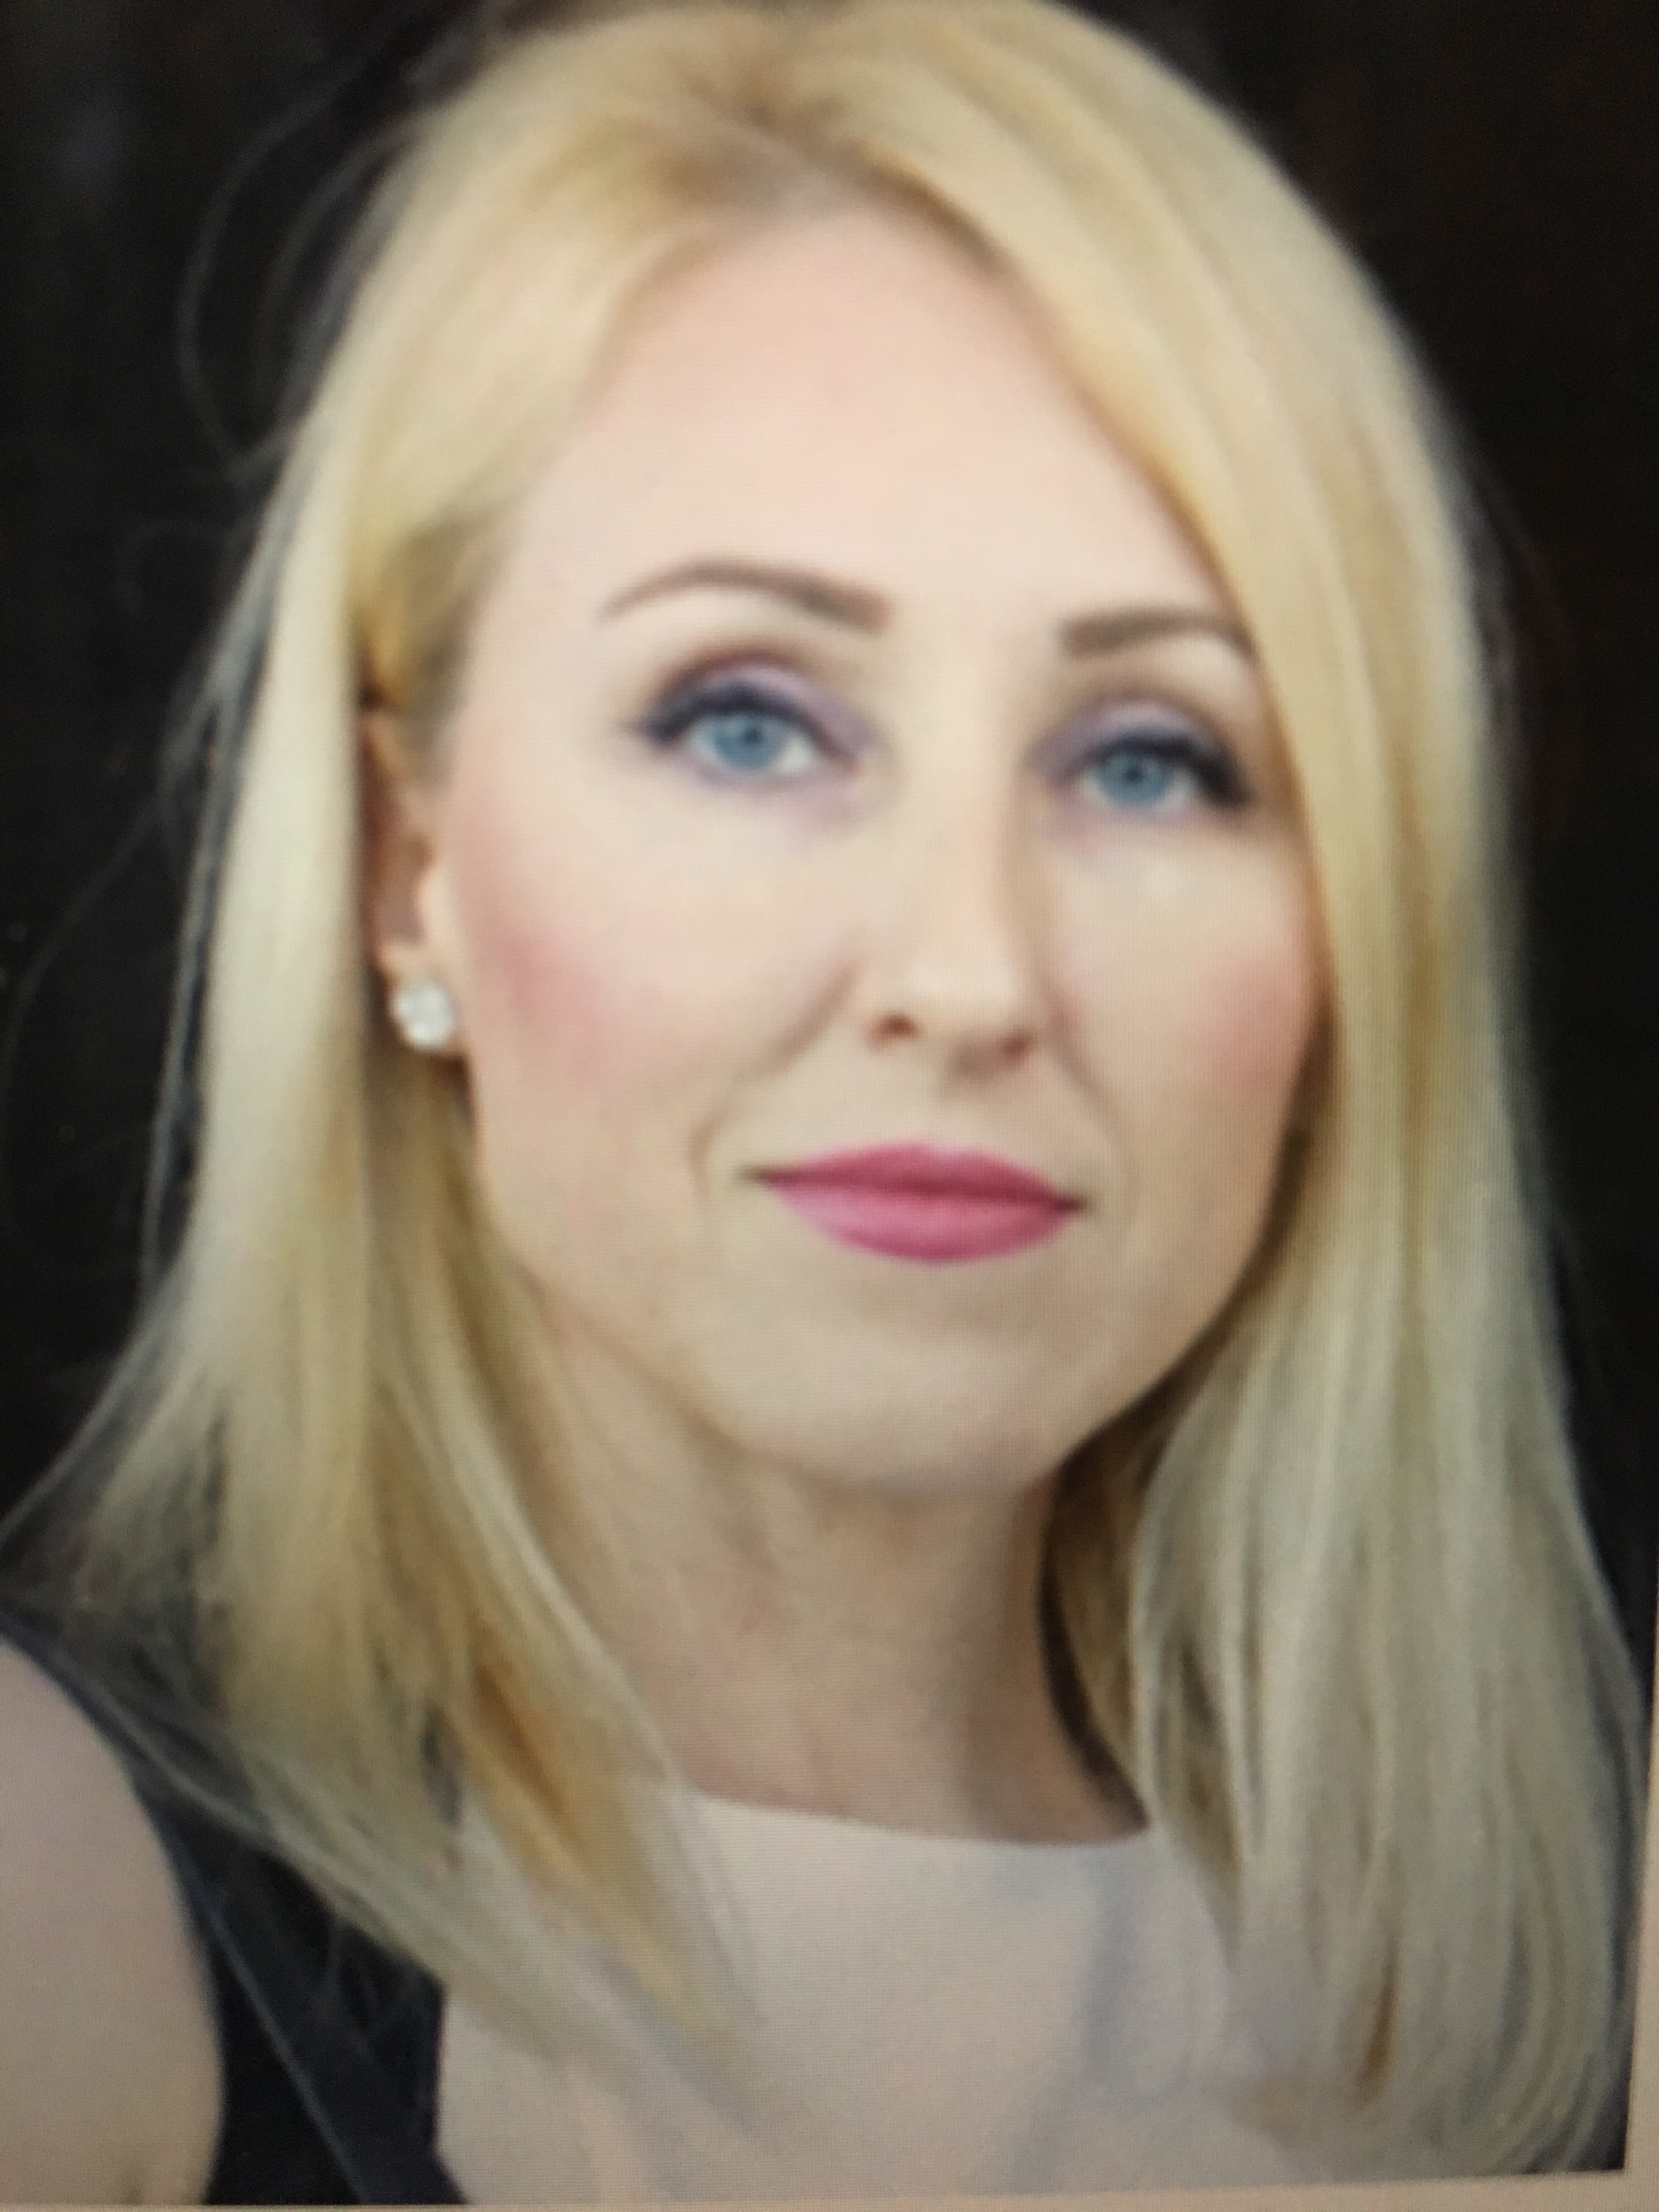 Founder and CEO of VoicED, Ava Mariya Gencheva